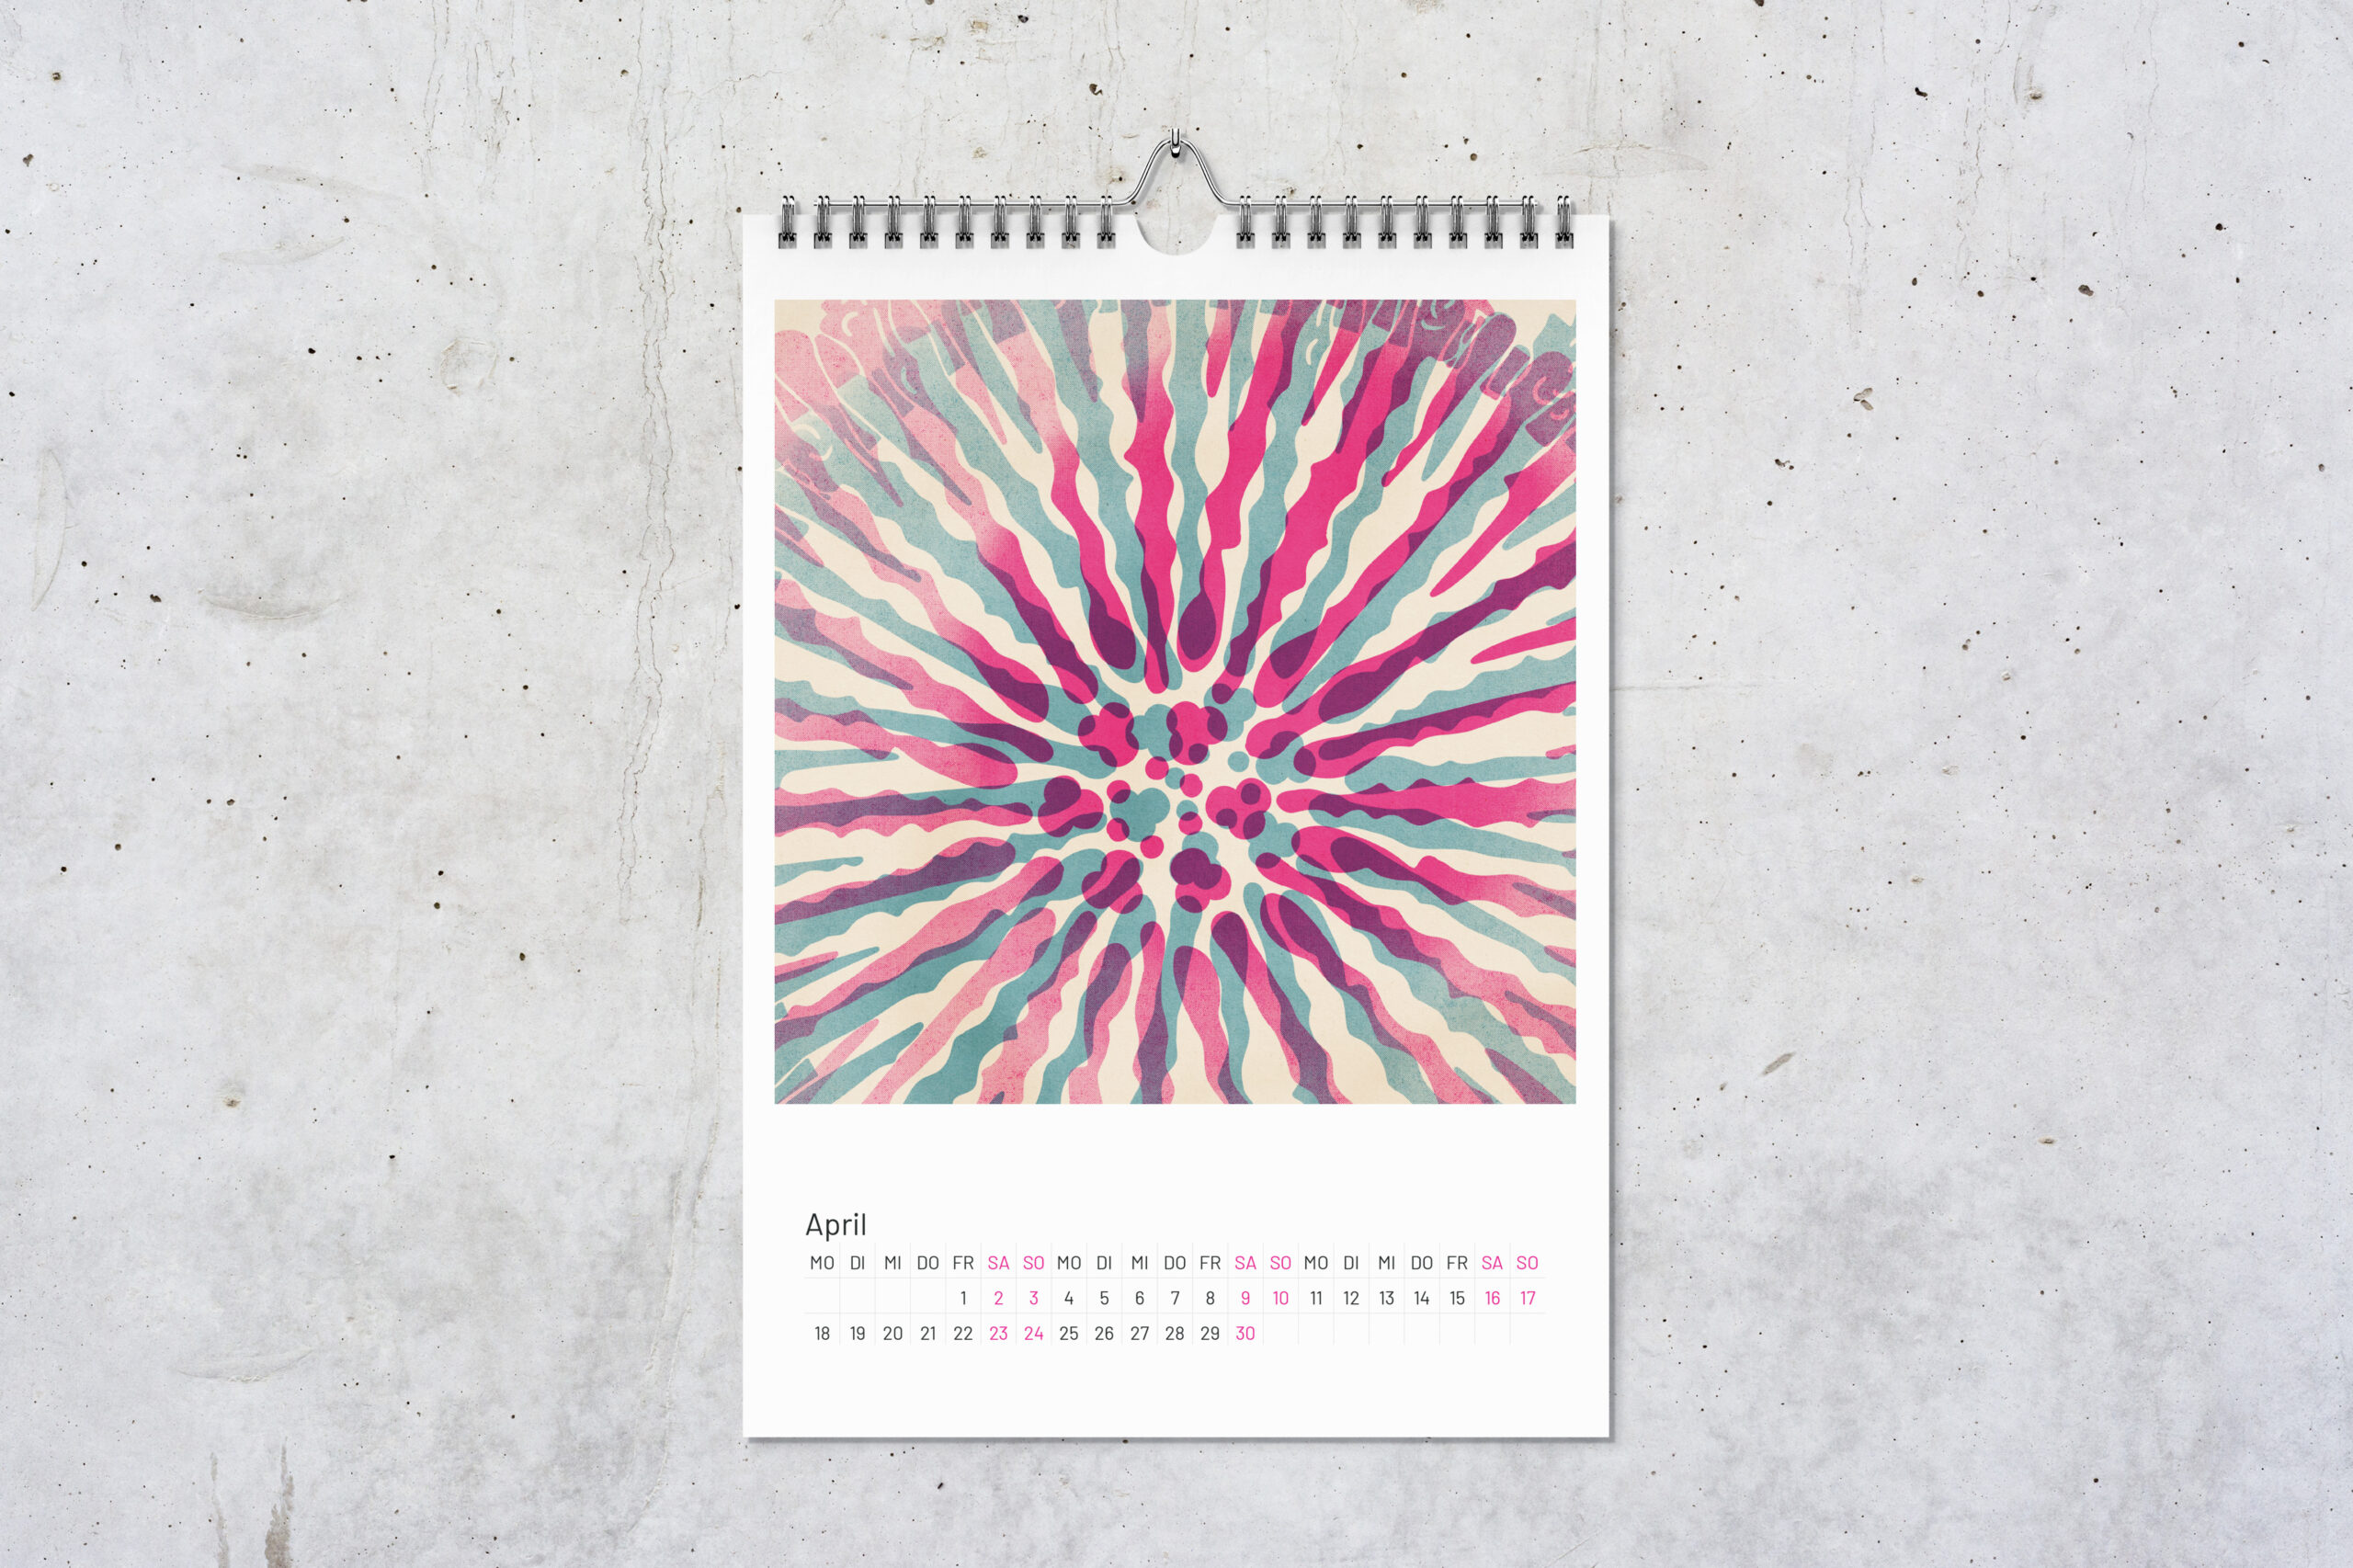 Kalenderblatt Koralle für April mit zwei digitalen Zeichnungen im Risografie Stil. Die Zeichnungen in pink und blau überlagern sich.